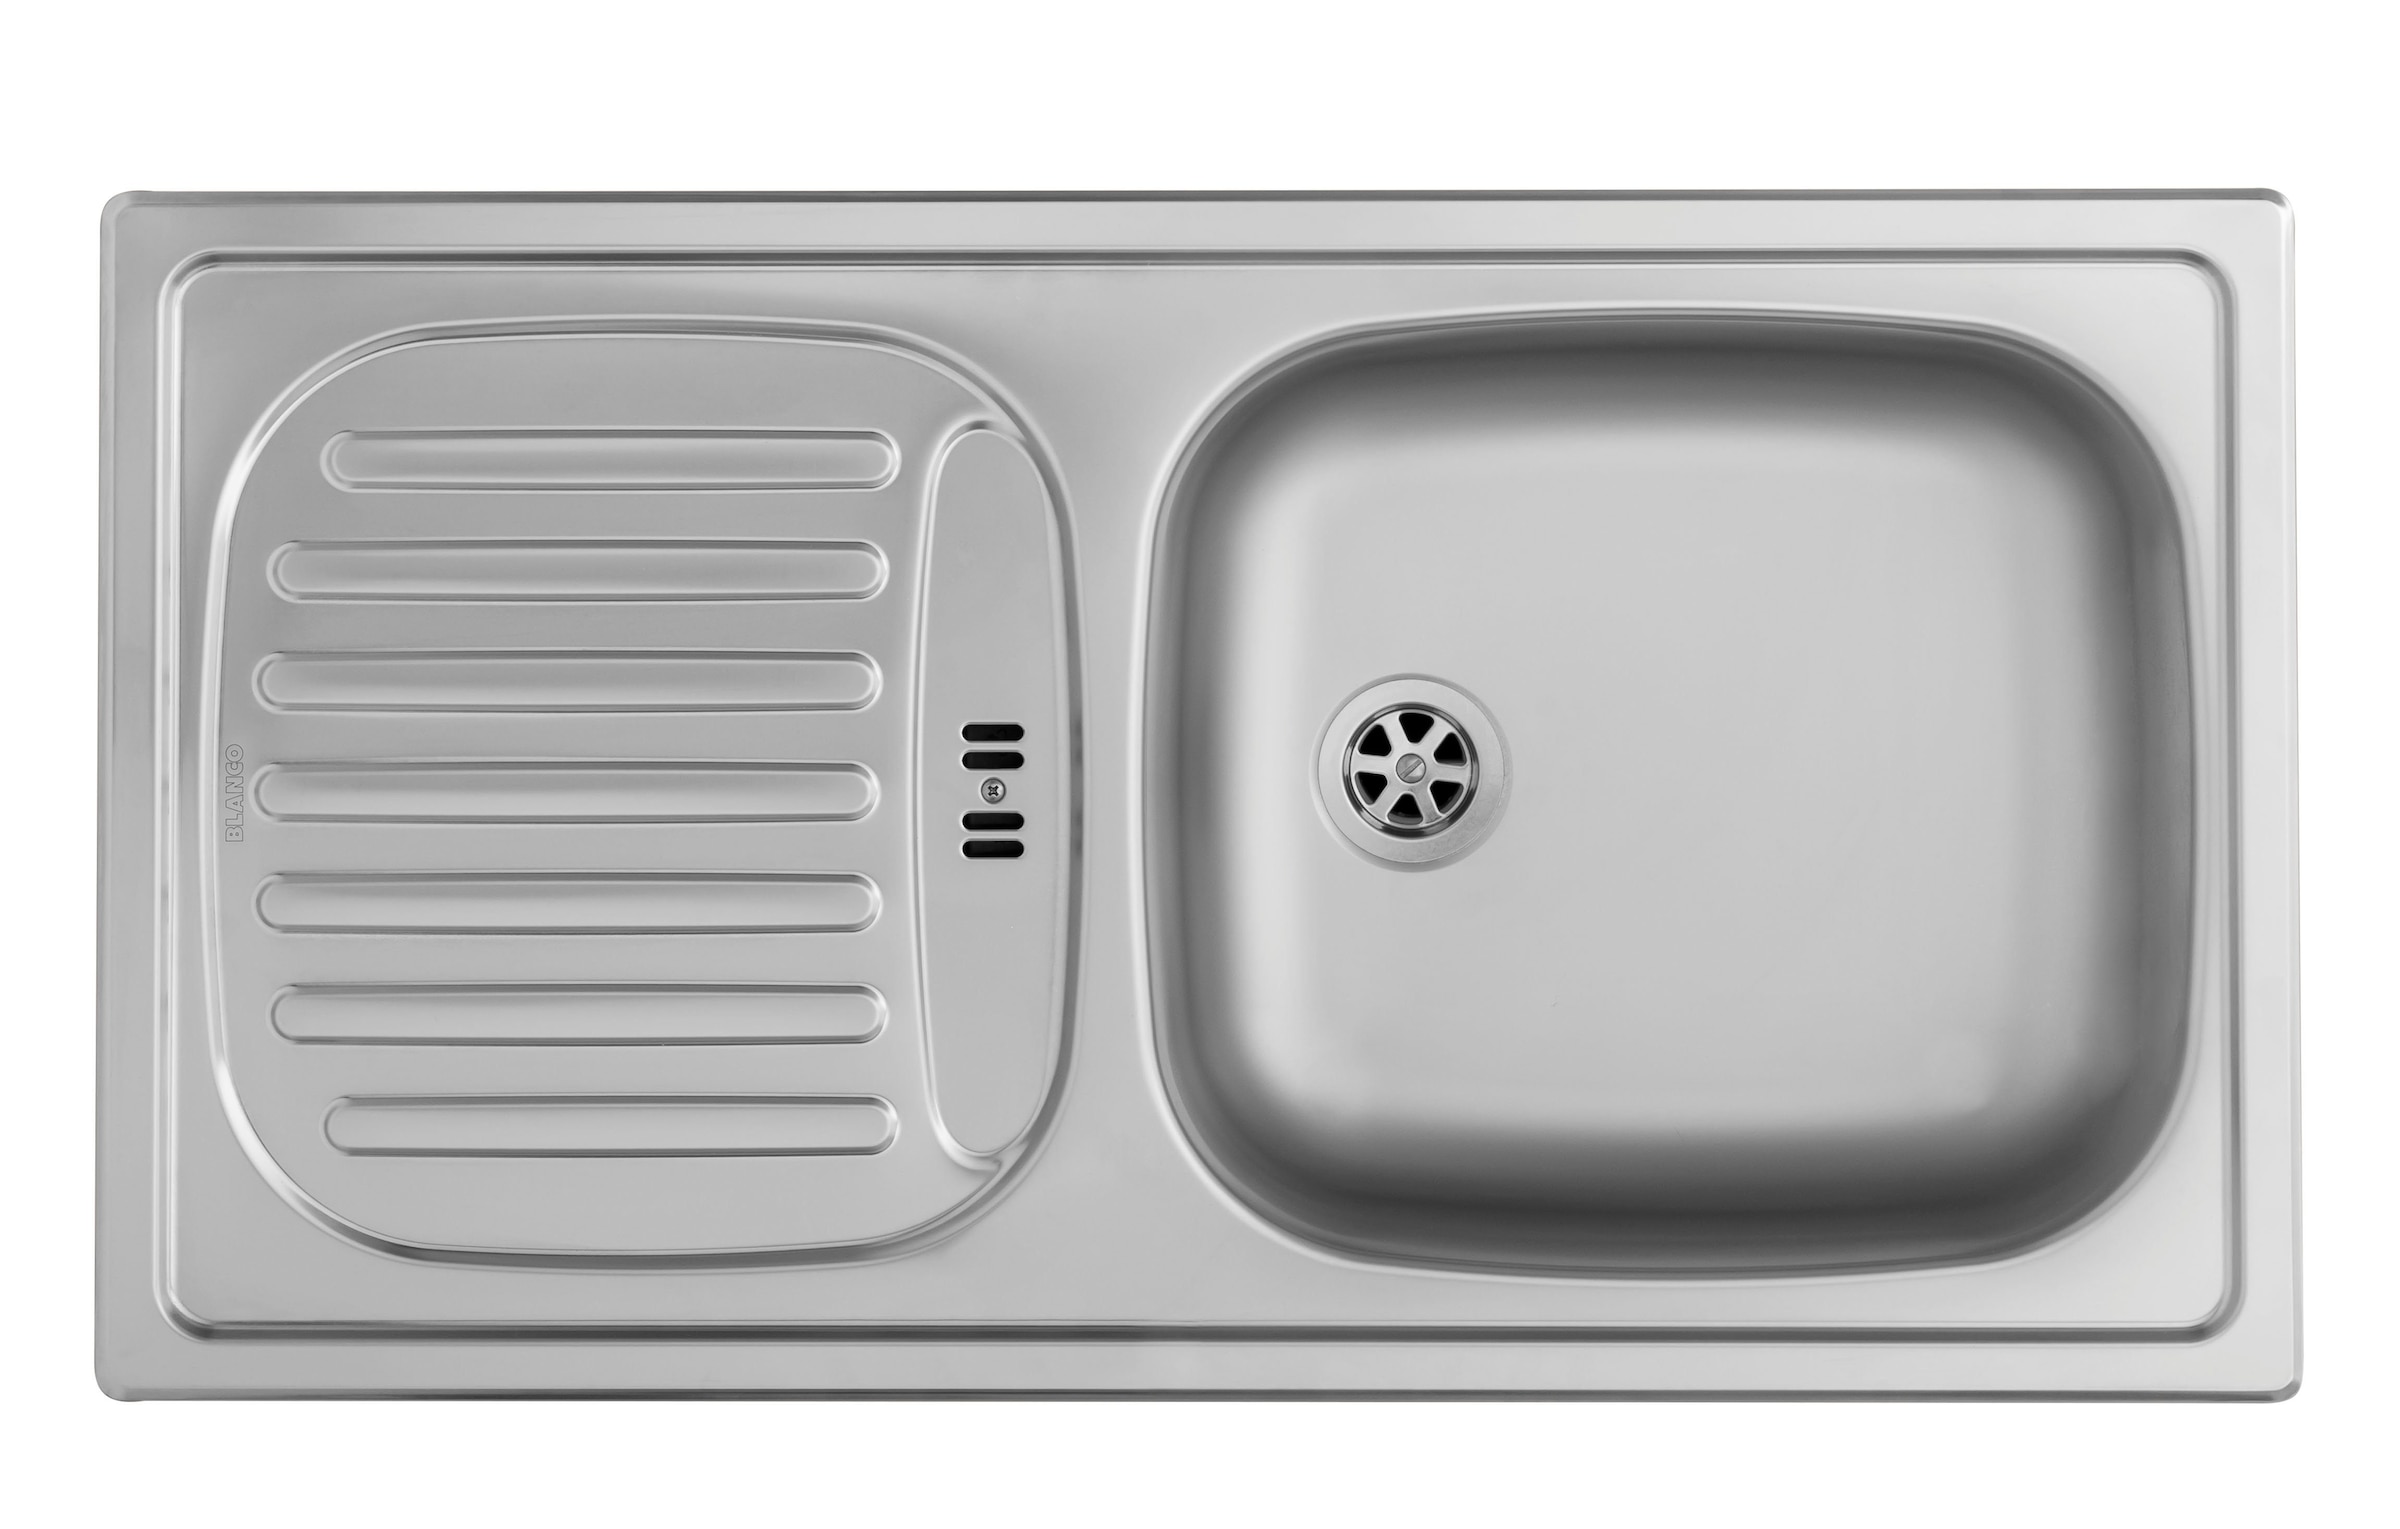 Home affaire Küchenzeile »Alby«, Breite 150 cm, in 2 Tiefen, ohne E-Geräte